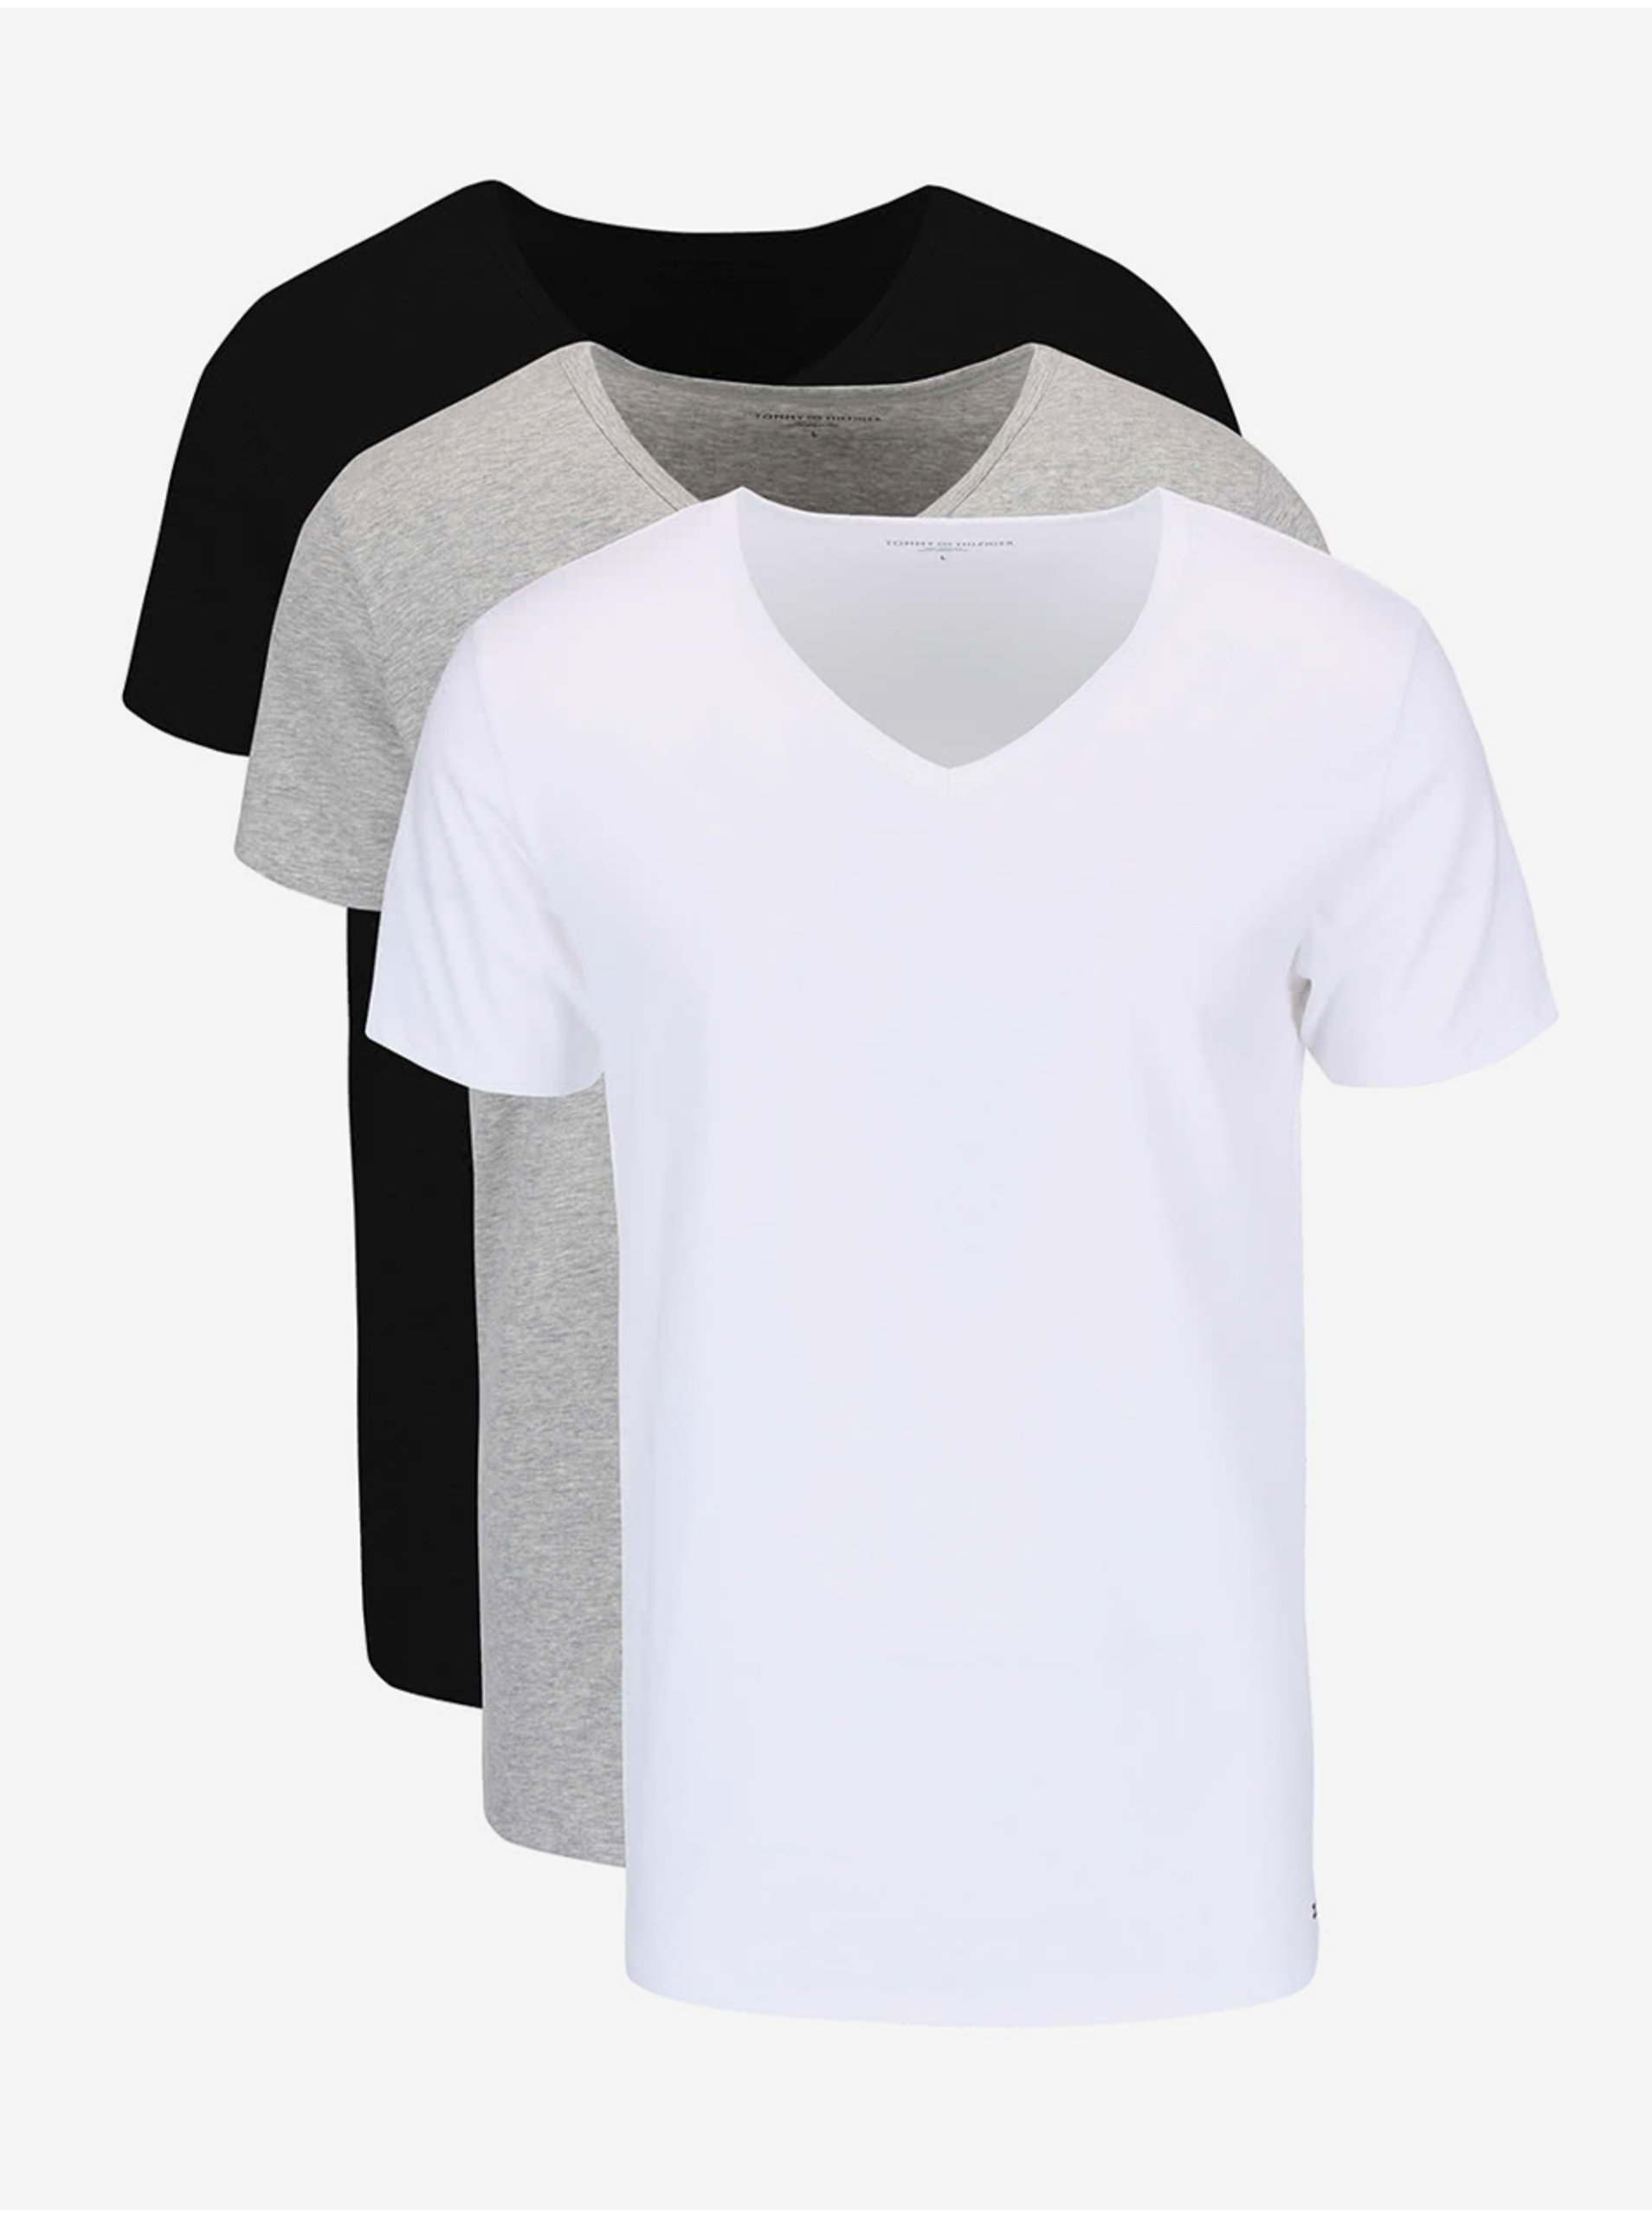 Lacno Súprava troch pánskych tričiek v bielej, sivej a čiernej farbe Tommy Hilfiger